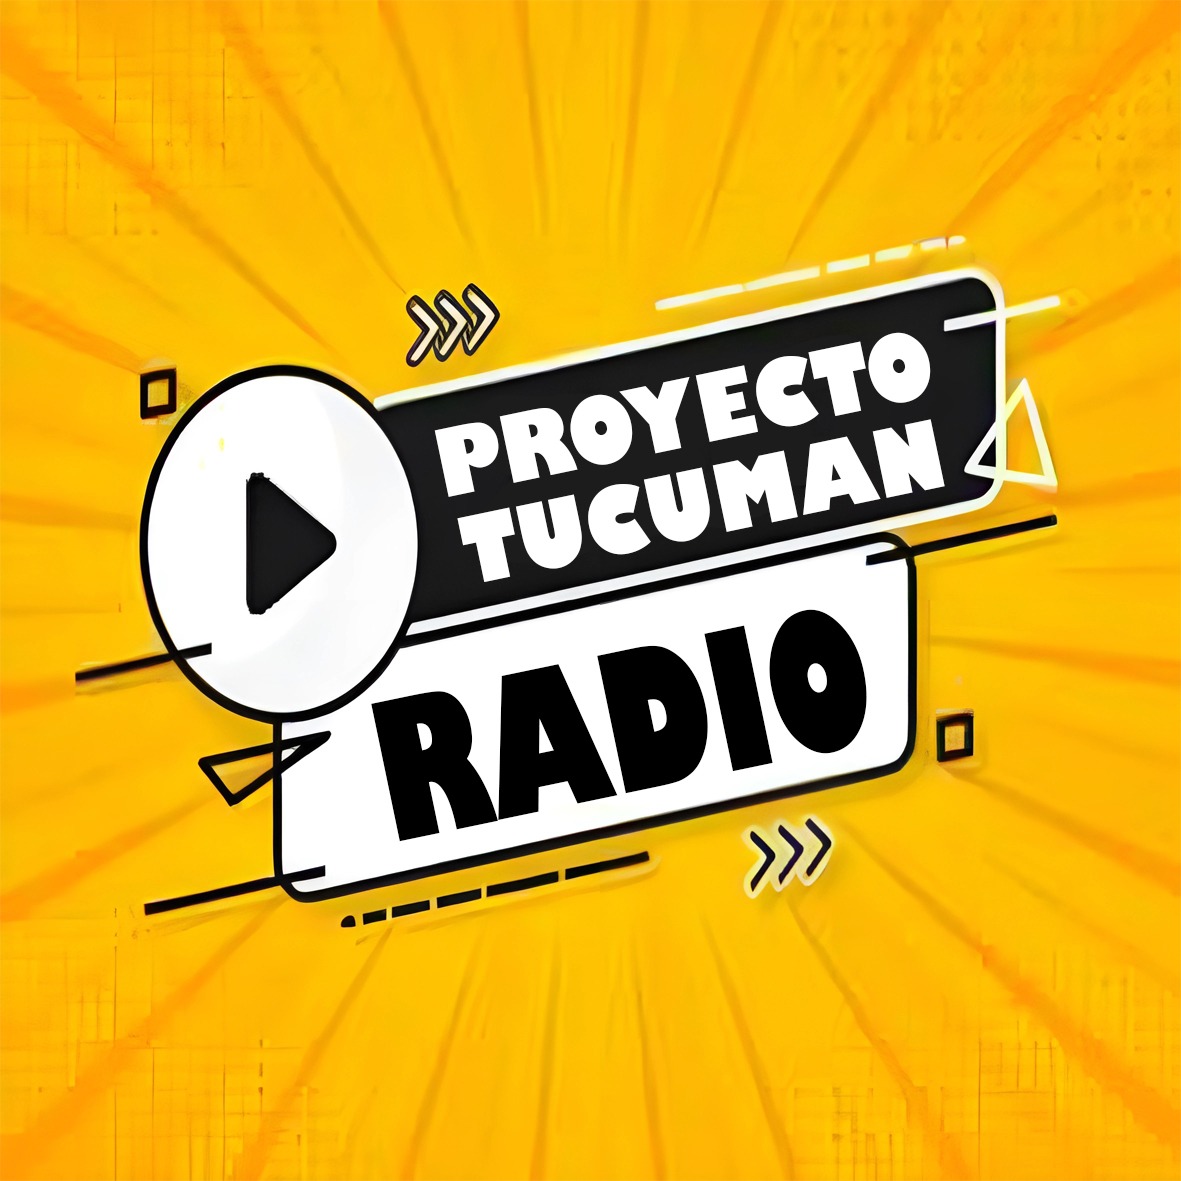 Proyecto Tucumán Radio